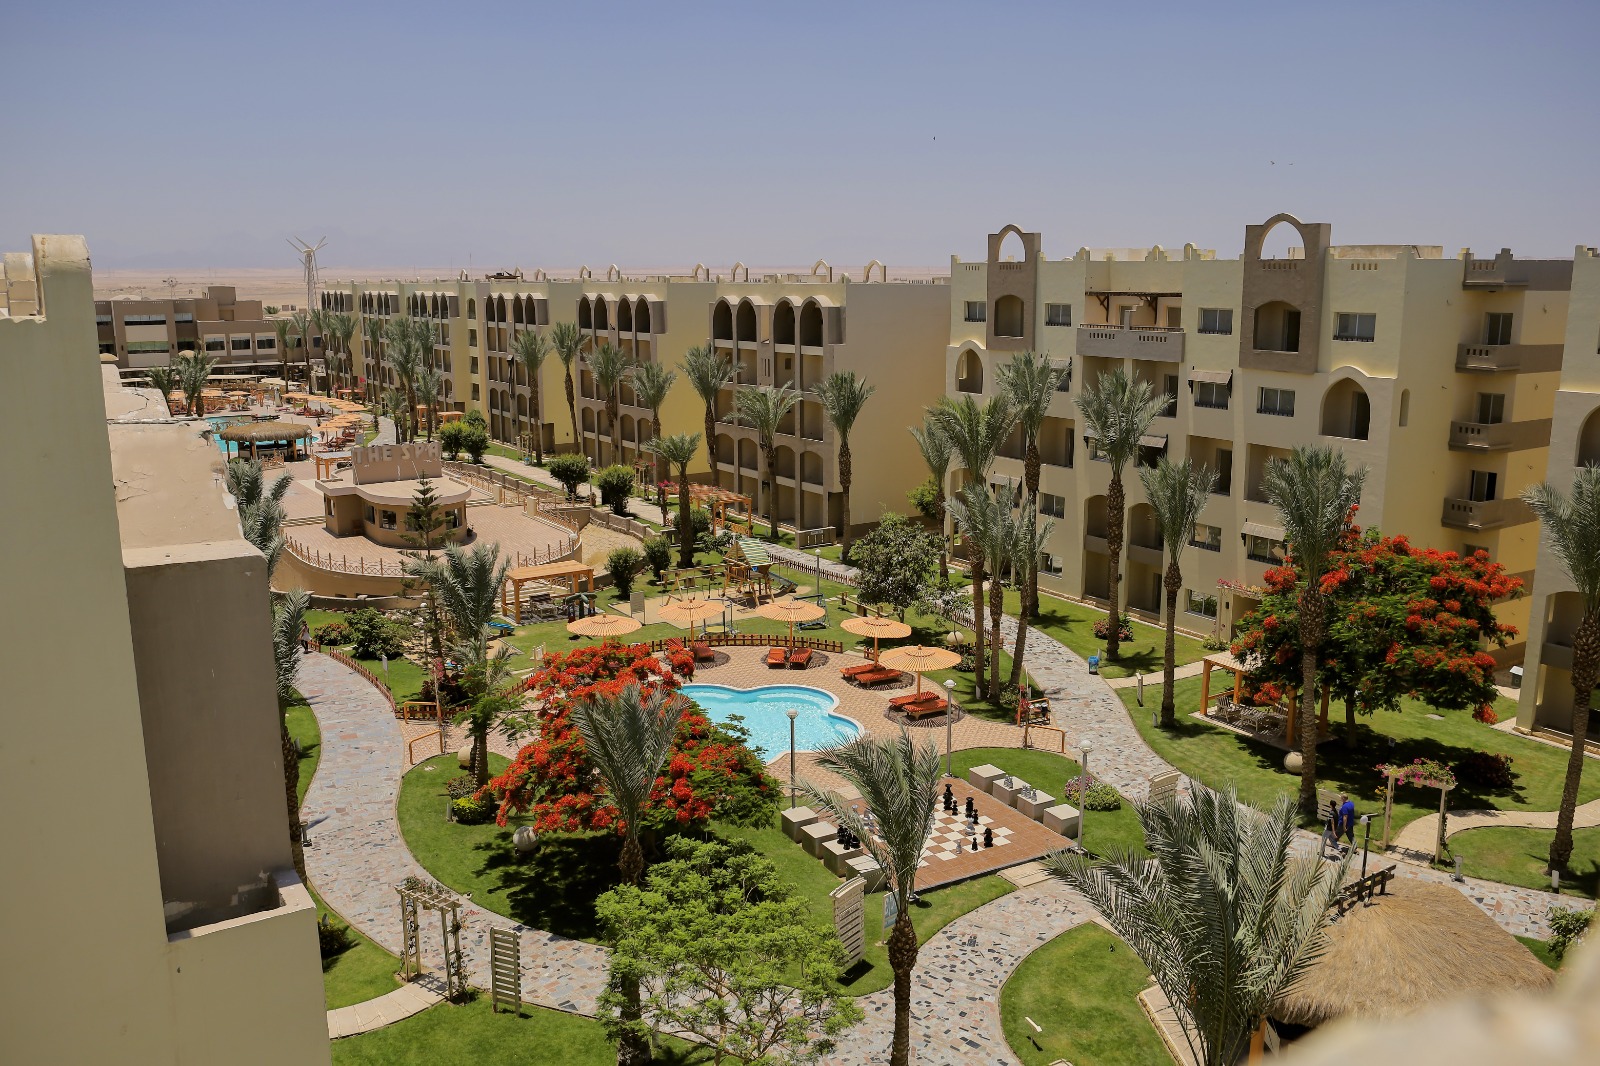 El karma aqua beach resort египет